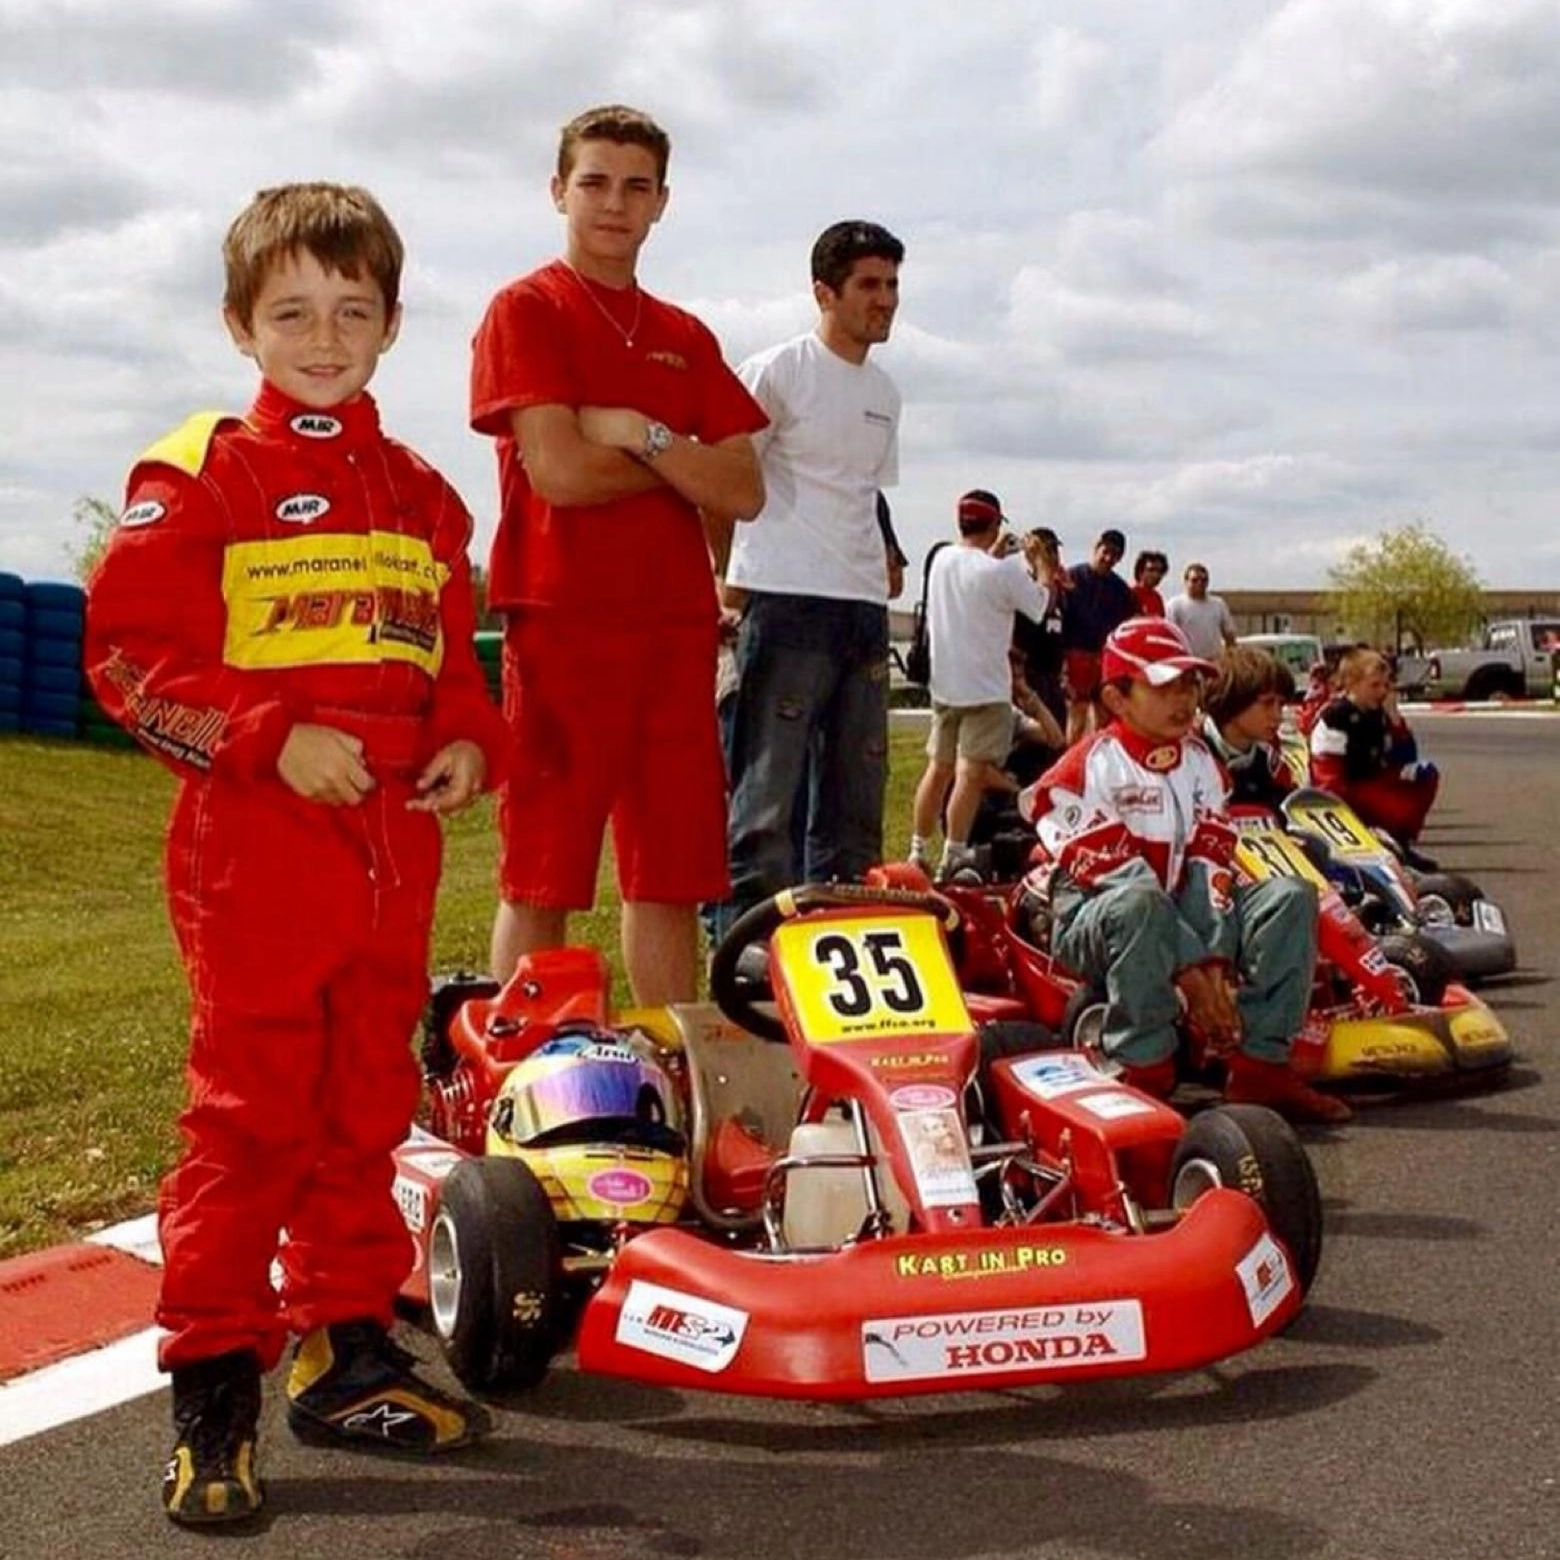 Un'altra foto di Leclerc e Bianchi al tempo dei kart